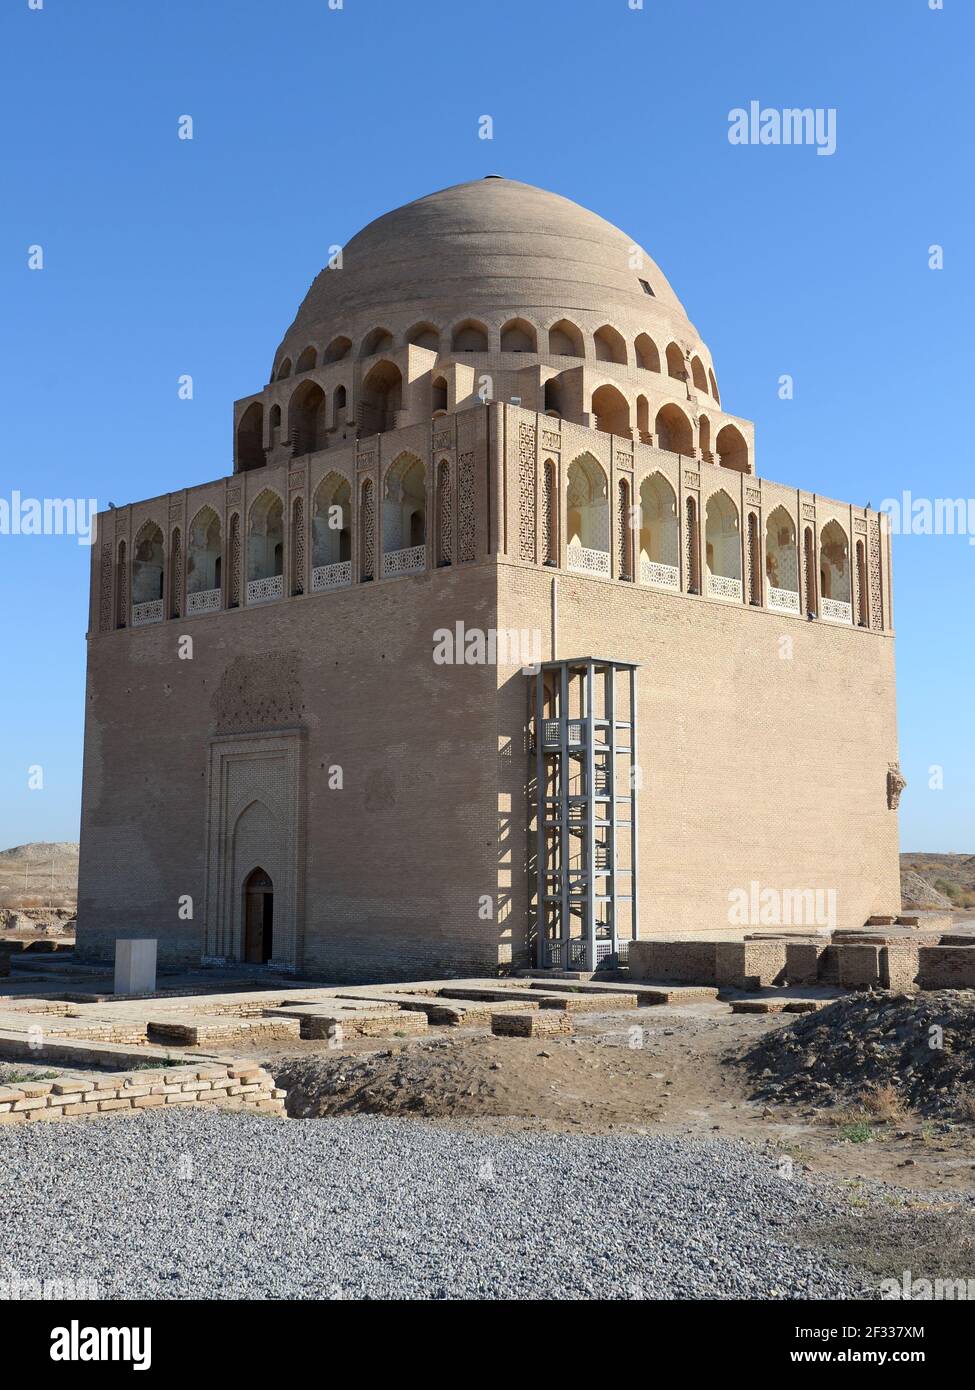 Mausoleo e Tomba del Sultano Sarjar costruiti per Ahmad Sanjar, sultano del Grande Impero Selgiuchiano nella Vecchia Merv, vicino a Maria, Turkmenistan. Foto Stock